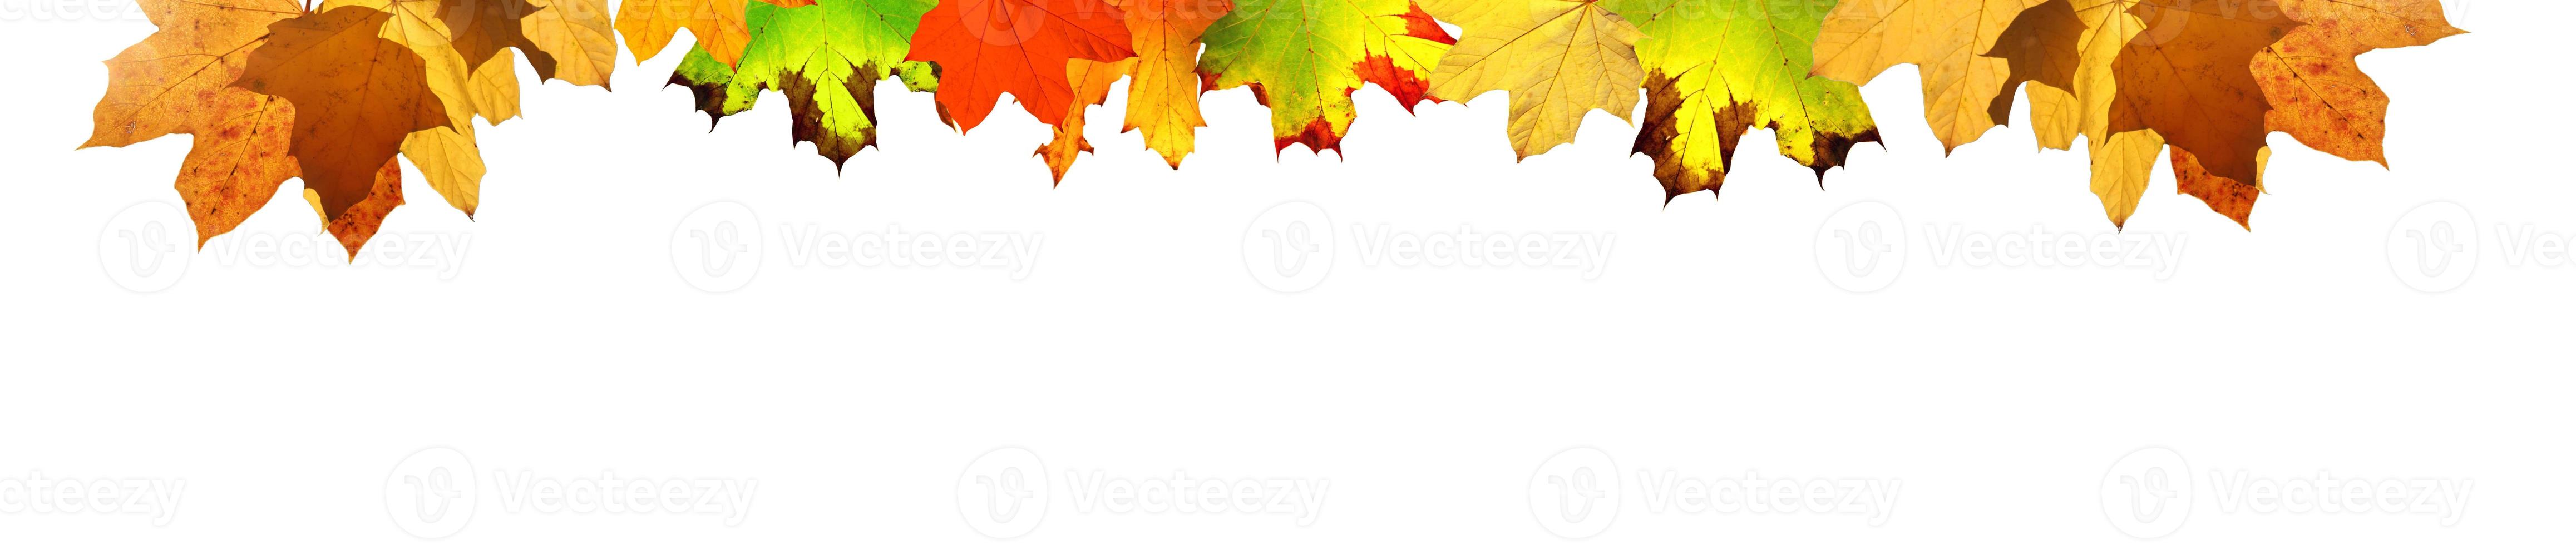 bunte helle Blätter isoliert auf weißem Hintergrund in einem Rahmen foto